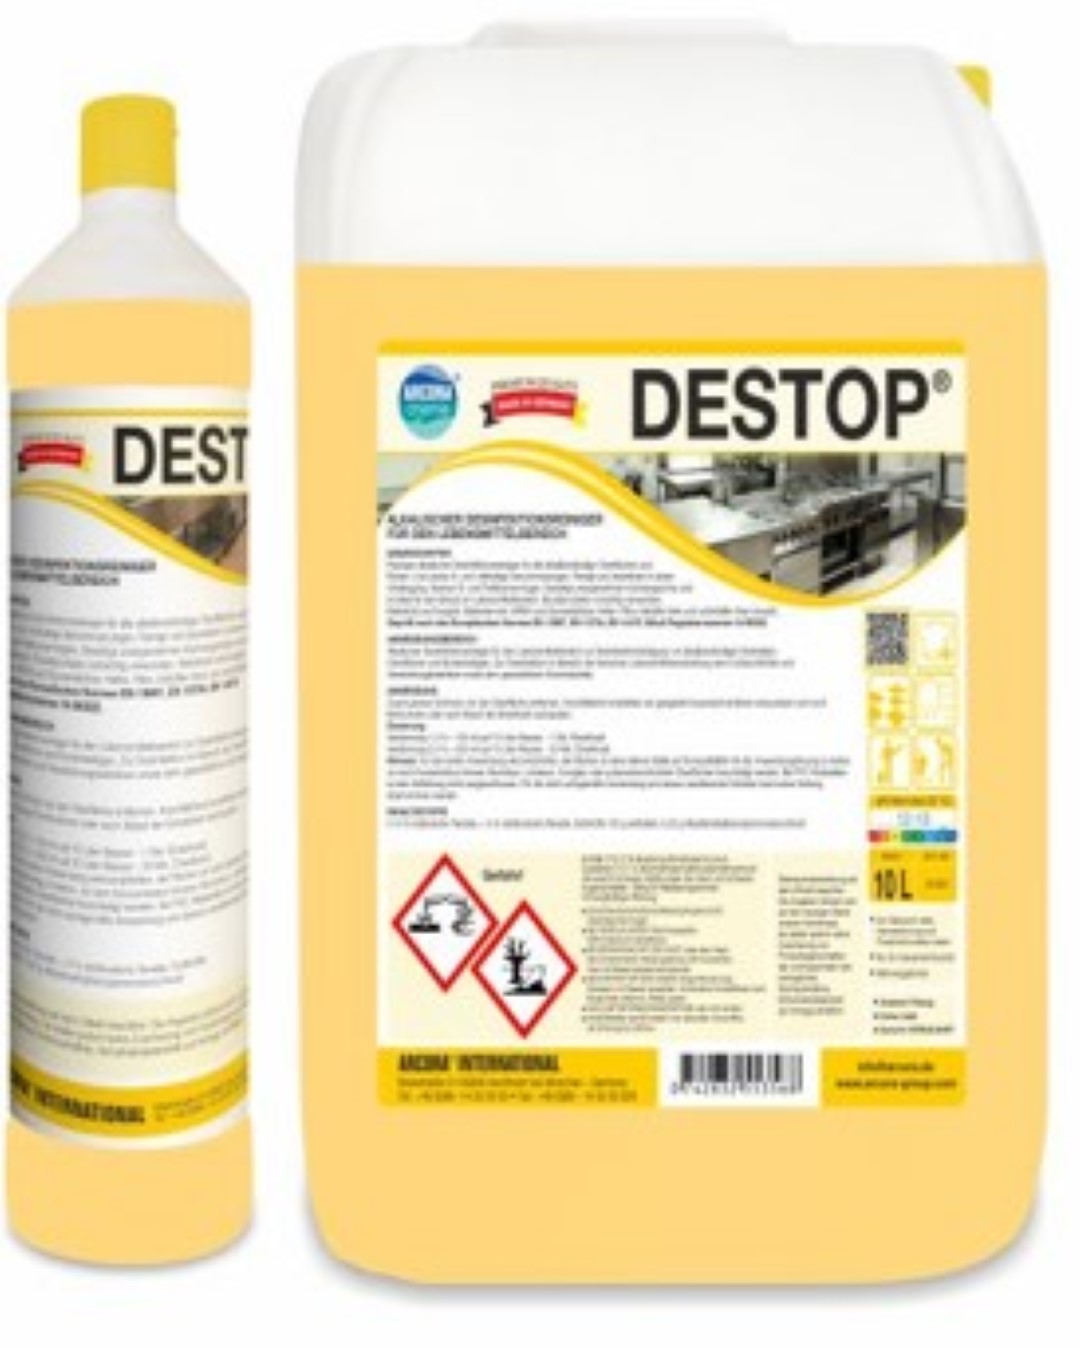  Destop | Alkalischer Desinfektionsreiniger | 10 Liter Kanister